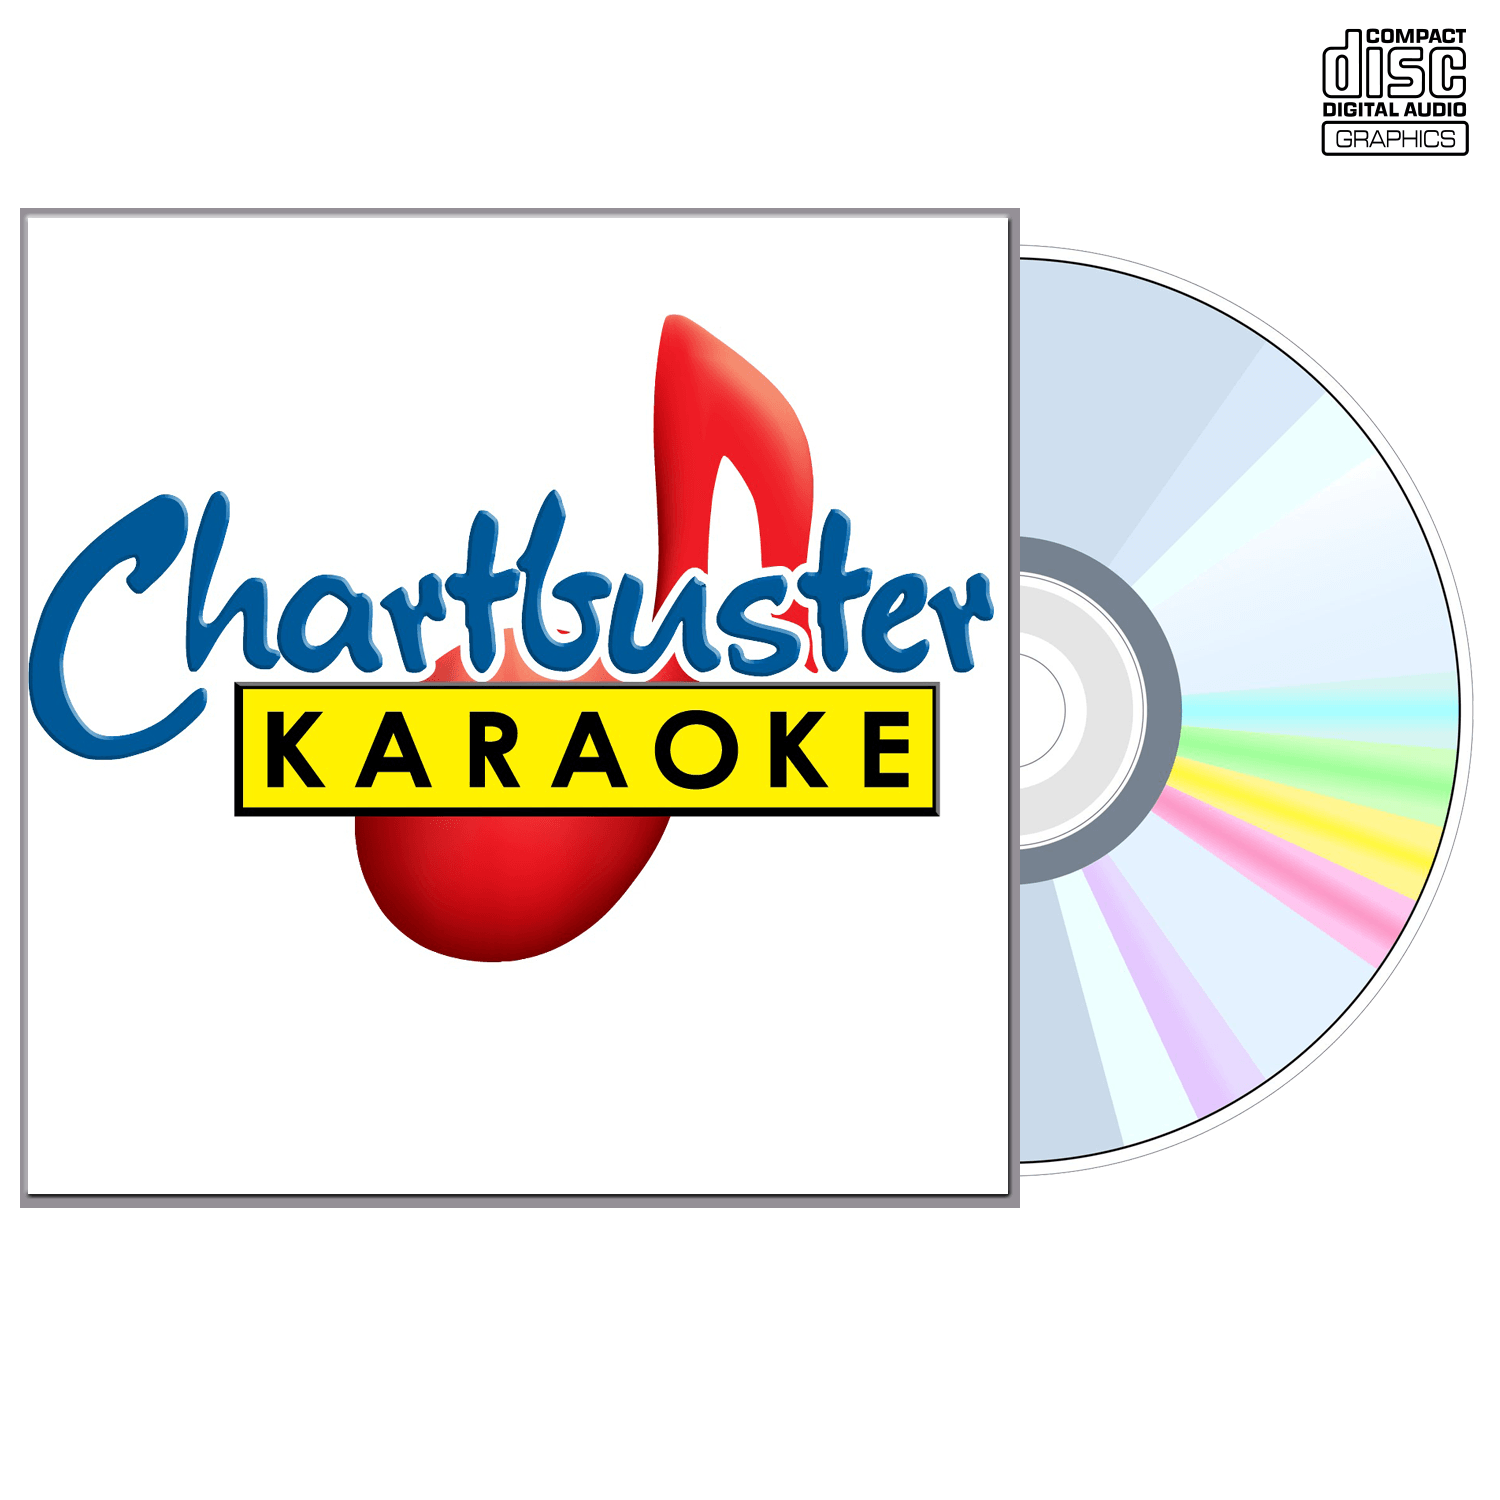 Fats Domino - CD+G - Chartbuster Karaoke - Karaoke Home Entertainment